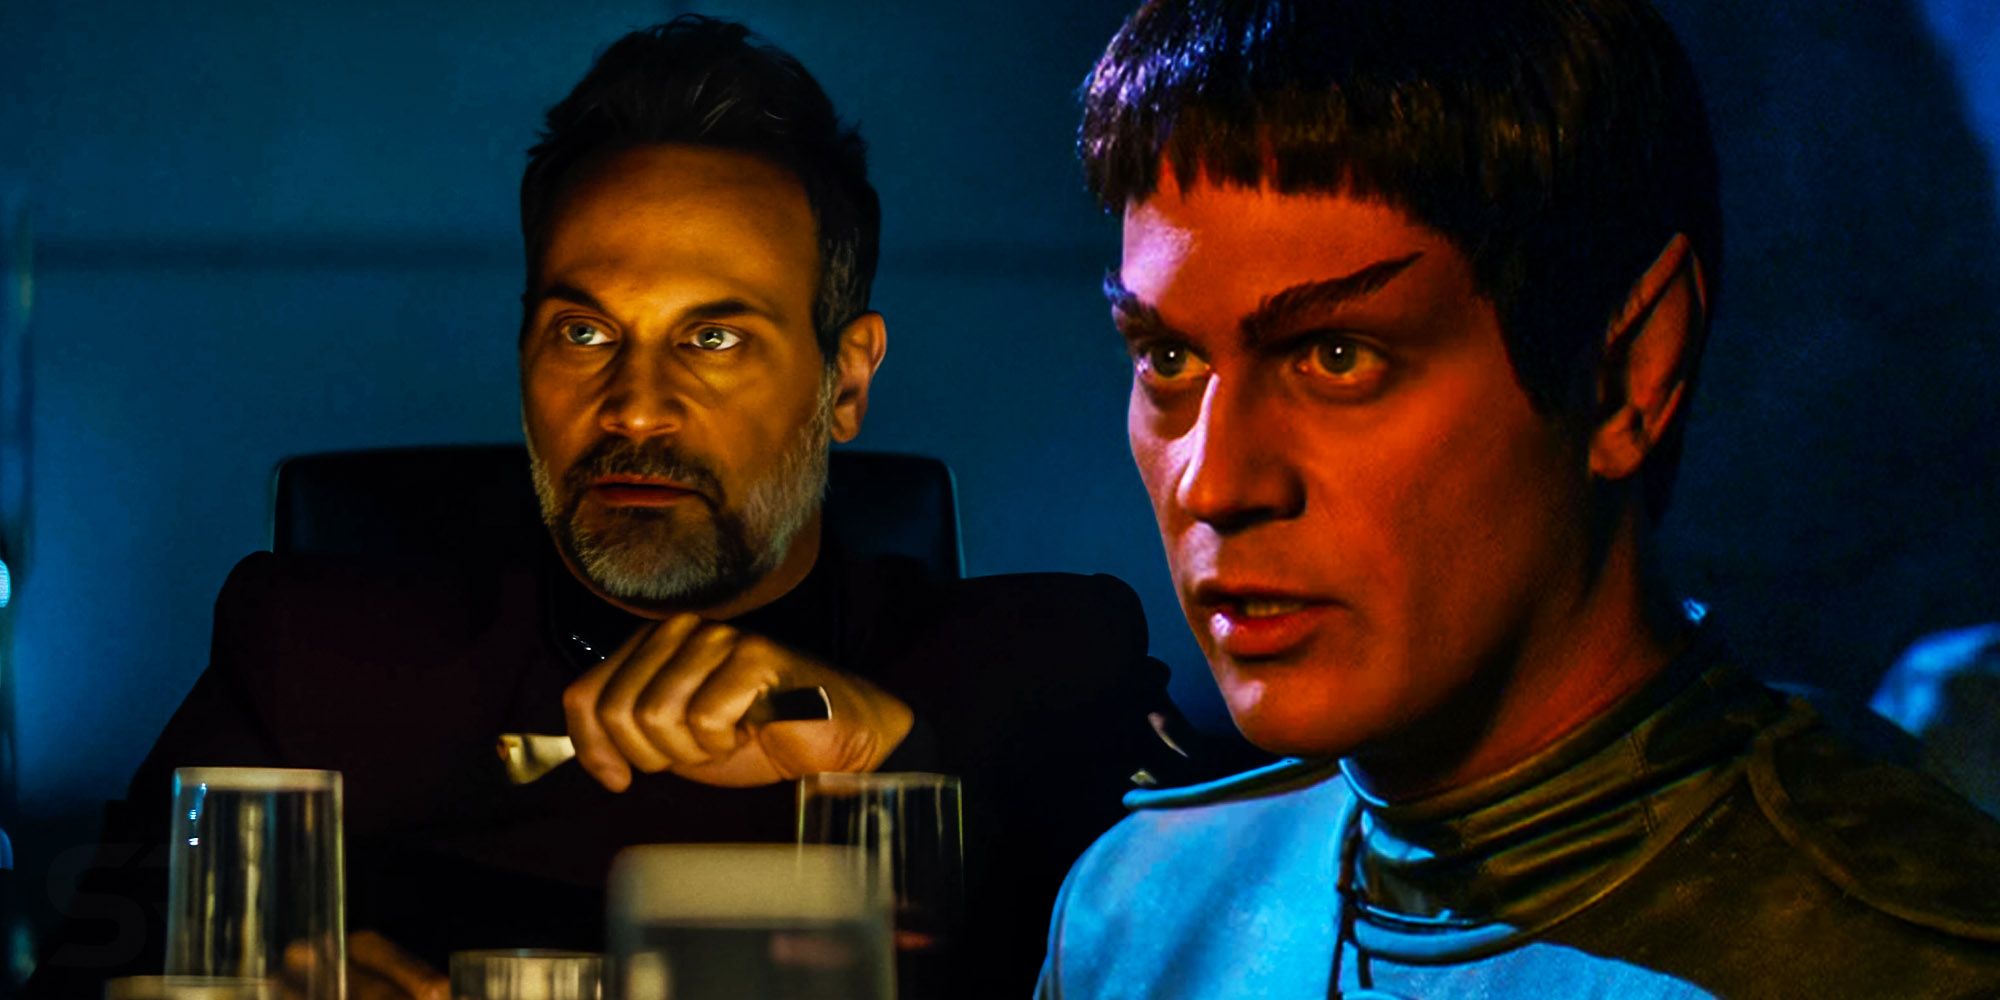 El actor destacado Capitán Shaw de la temporada 3 de Picard les recuerda a los fanáticos que estuvo en Star Trek antes